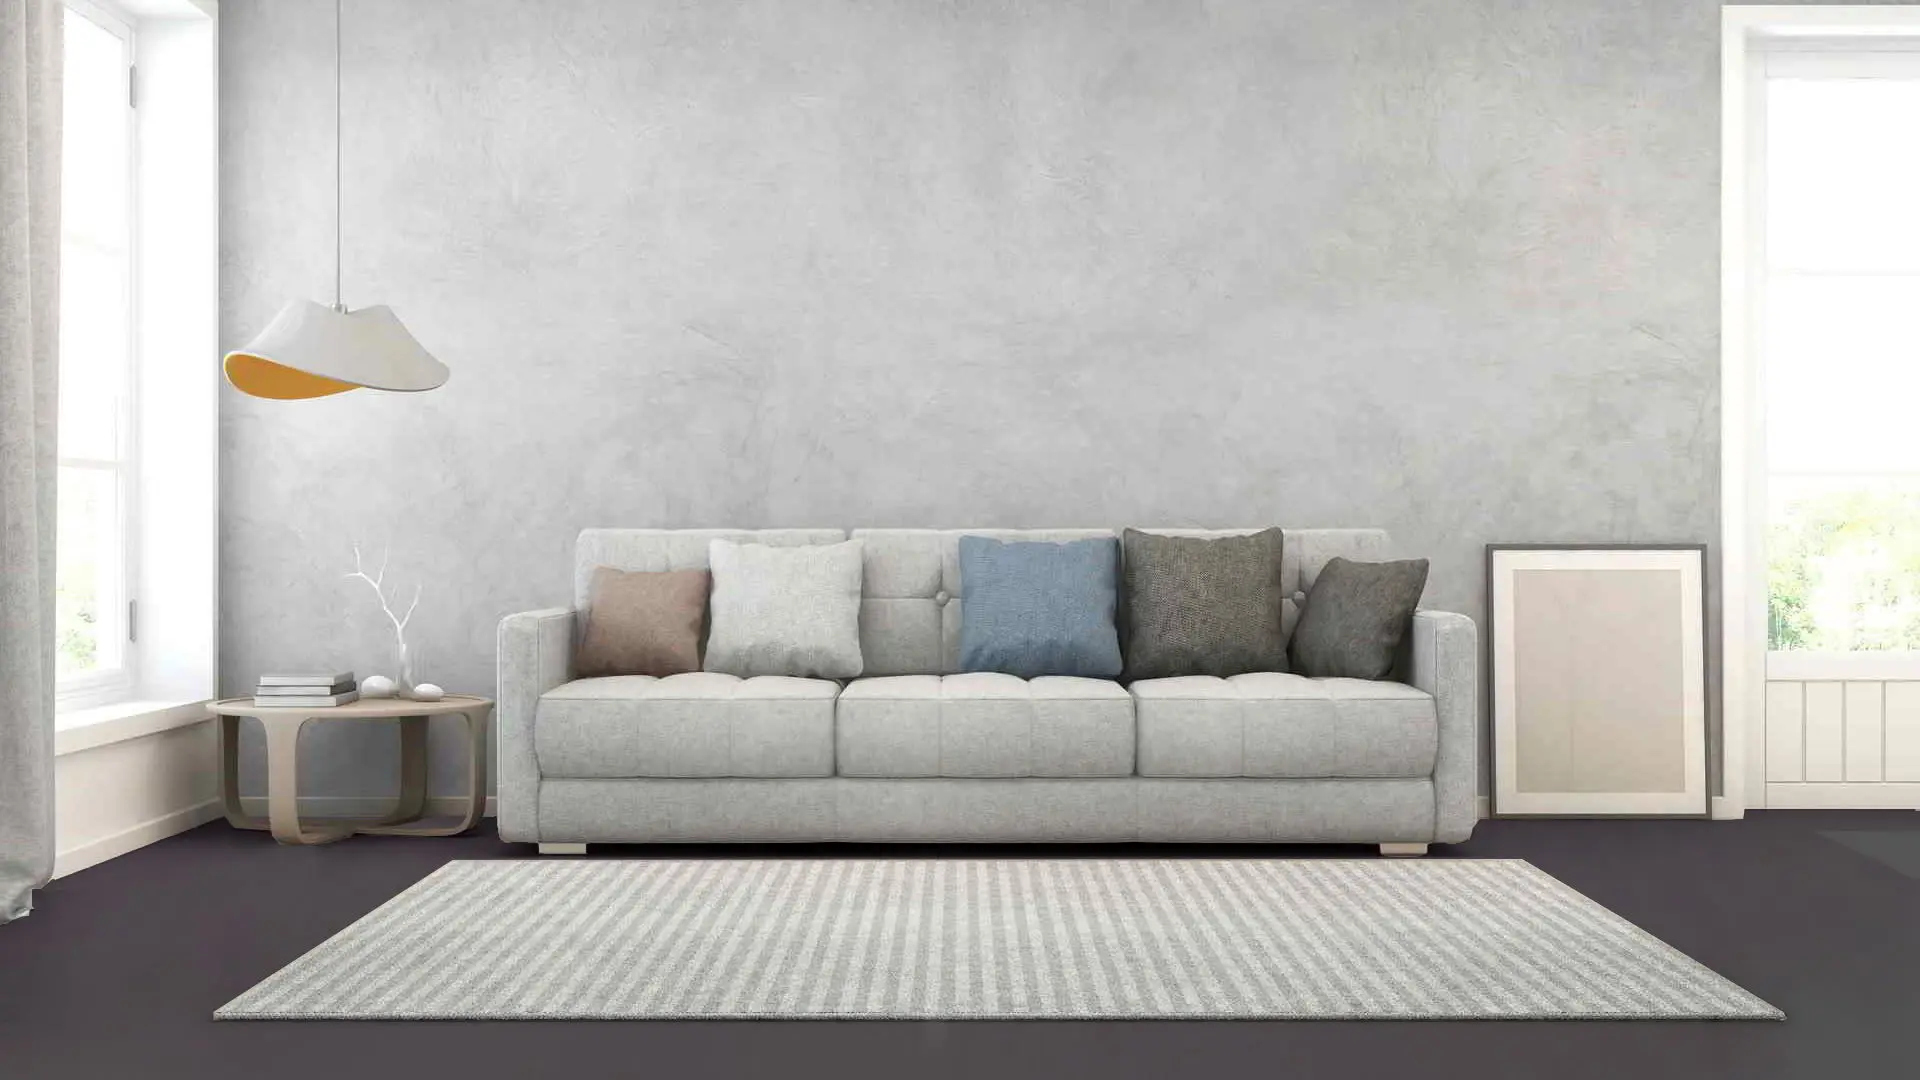 Moderne stil lounge med mikrocement væg i grå tone